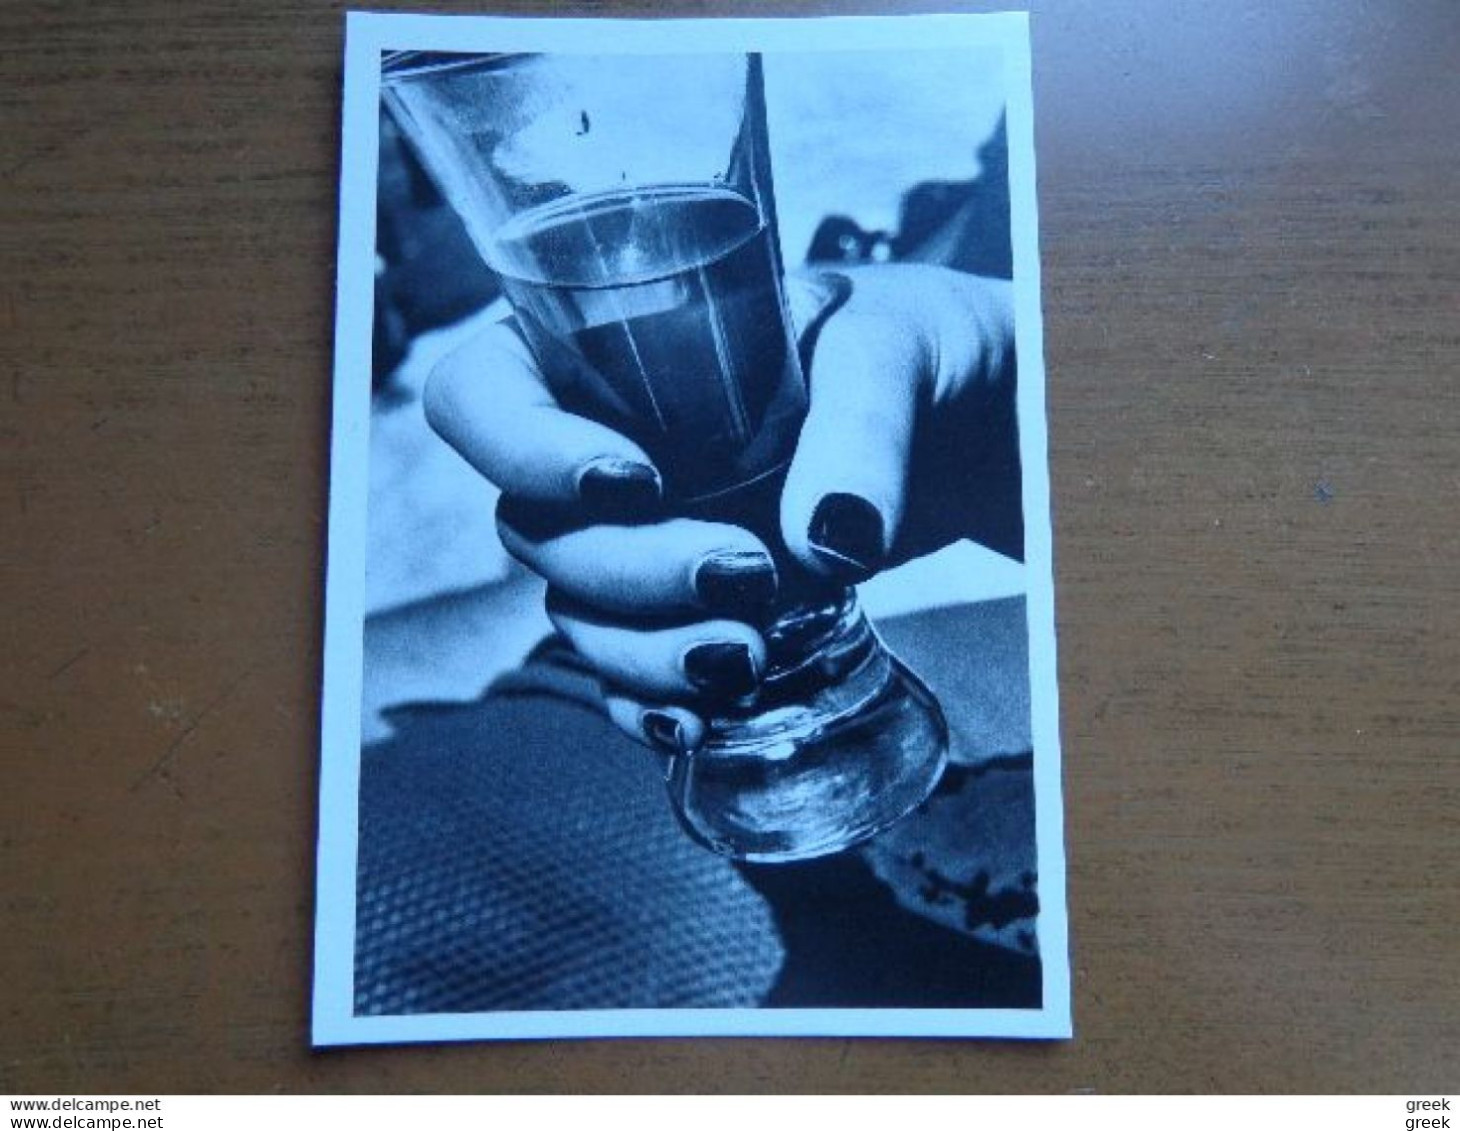 23 kaarten, Fotografie van Helmut Newton (ook met enkele naakt kaarten, zie foto's) onbeschreven